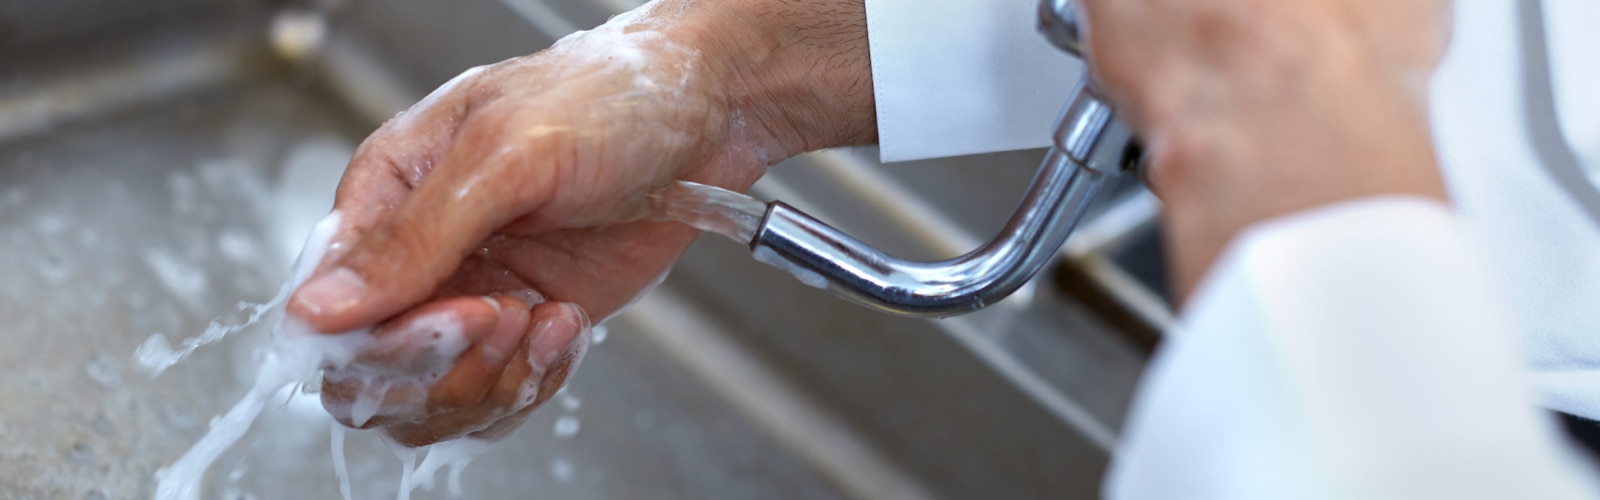 Lavage des mains dans les restaurants et en restauration